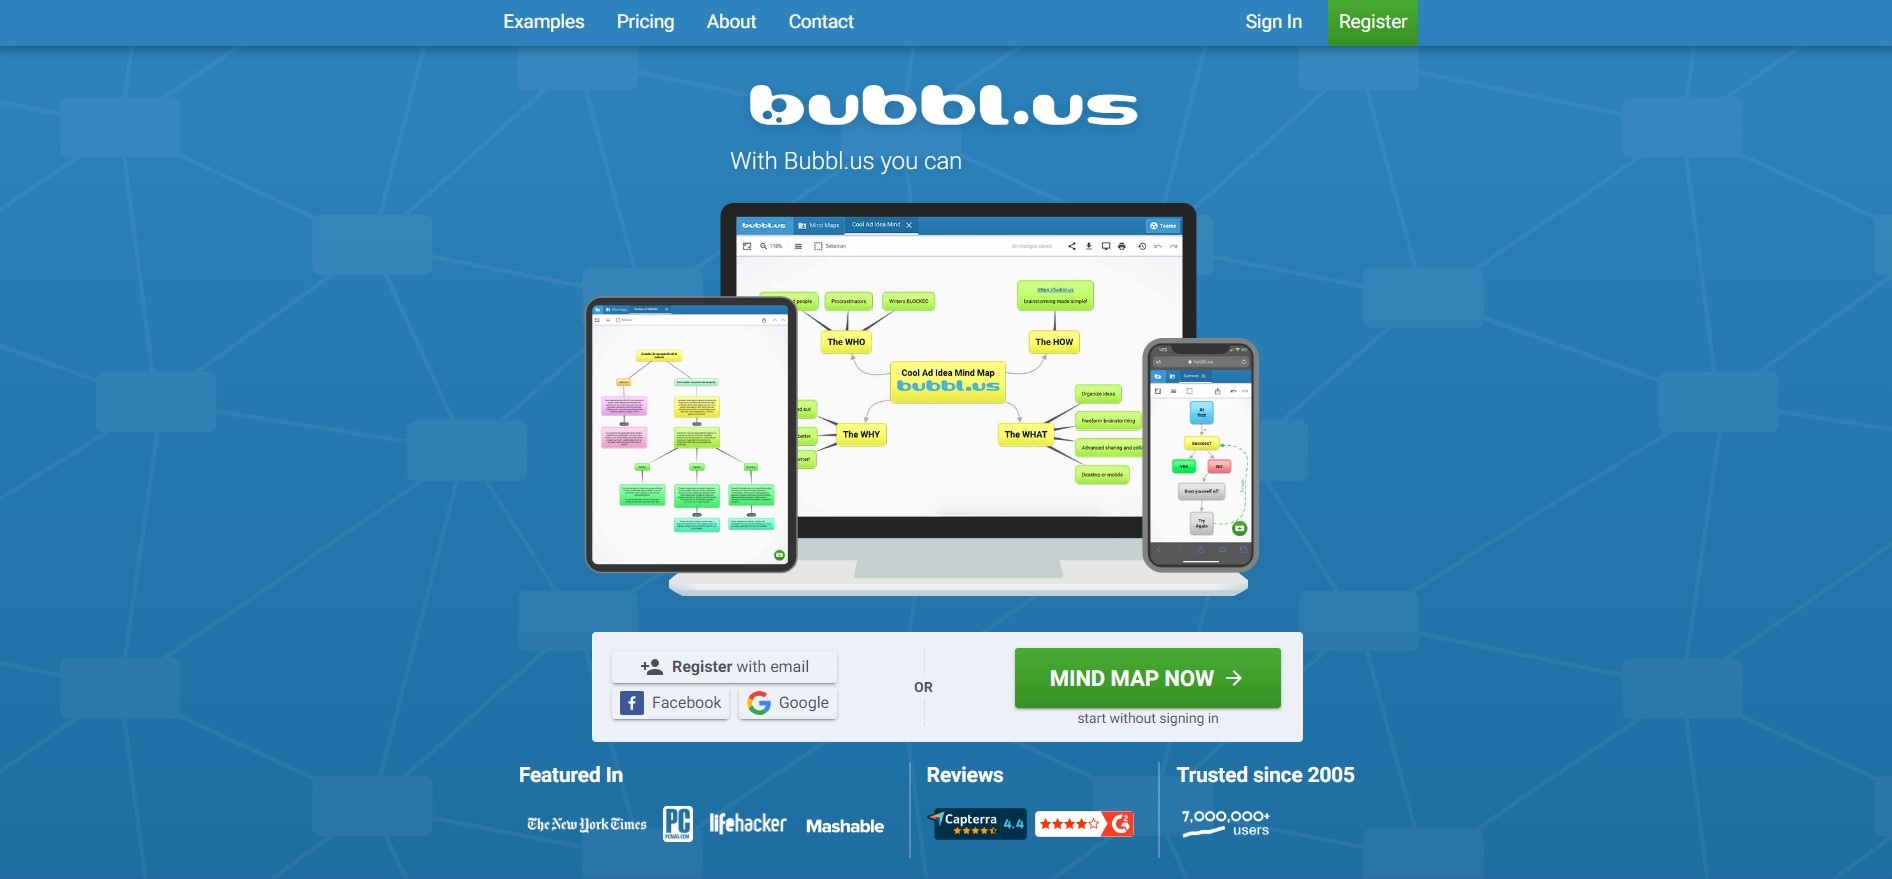 pagina inicial do bubbleus